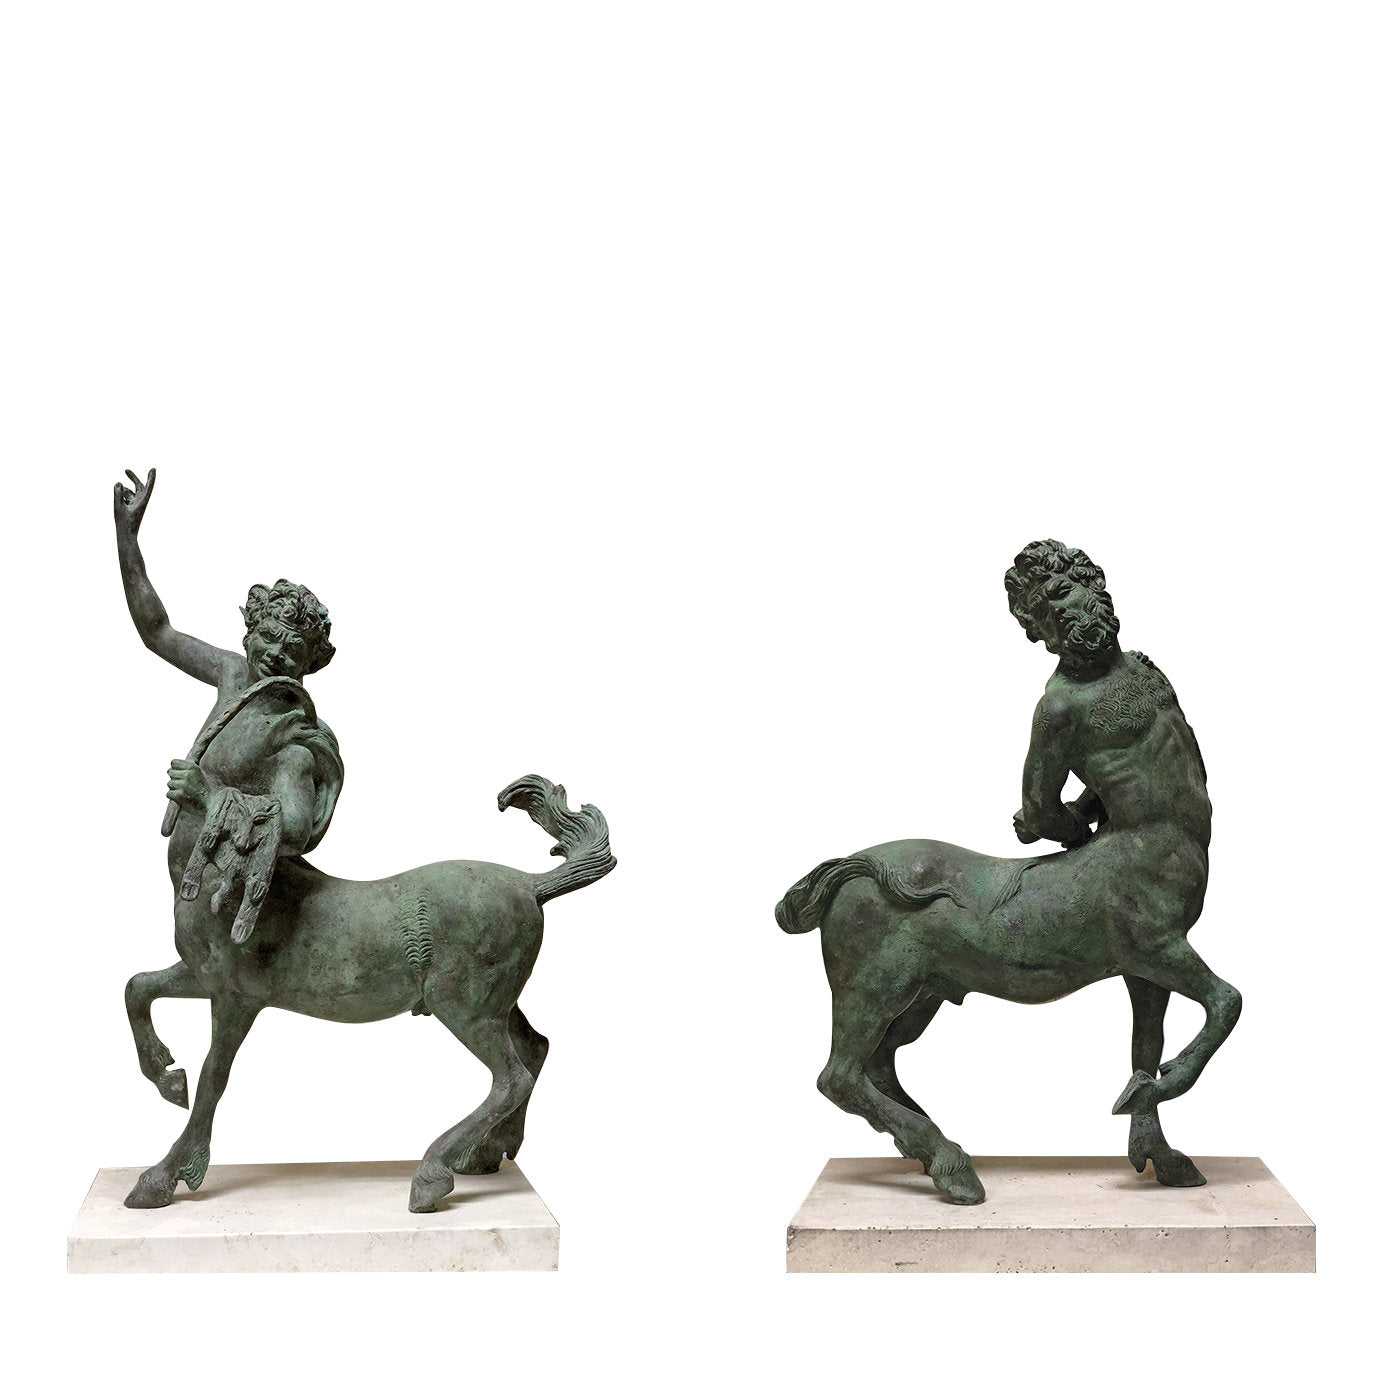 Centaur Bronze Statuette #2 - Alternative view 1